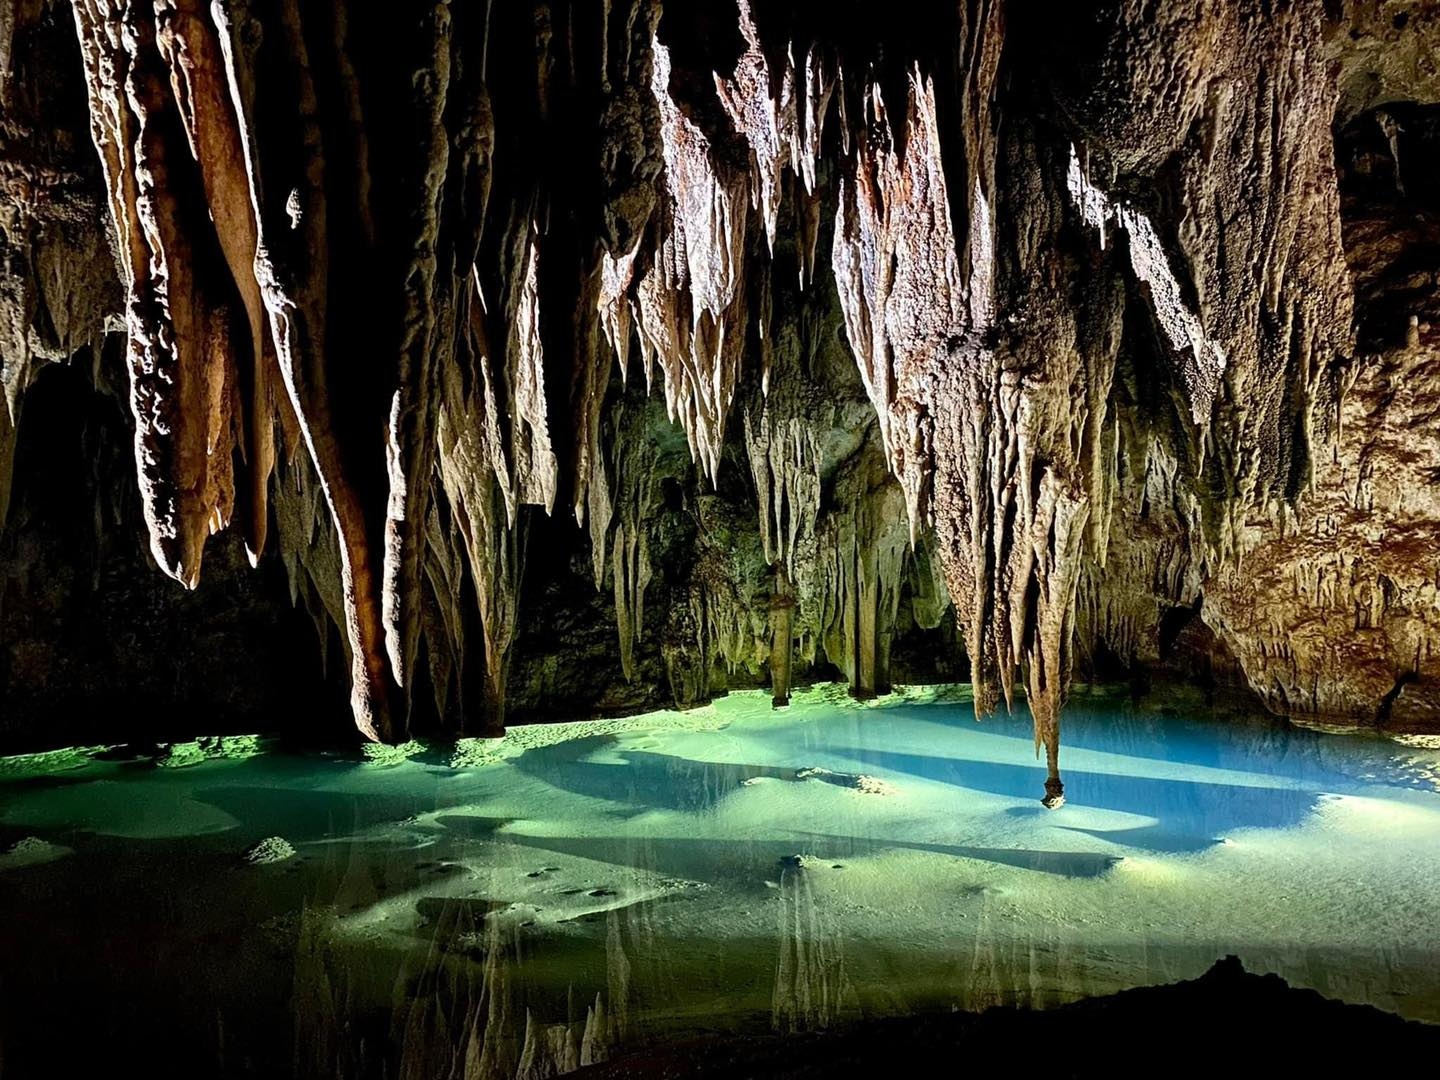 Mê mẩn vẻ đẹp siêu thực của hệ thống hang động mới ở Quảng Bình - ảnh 6